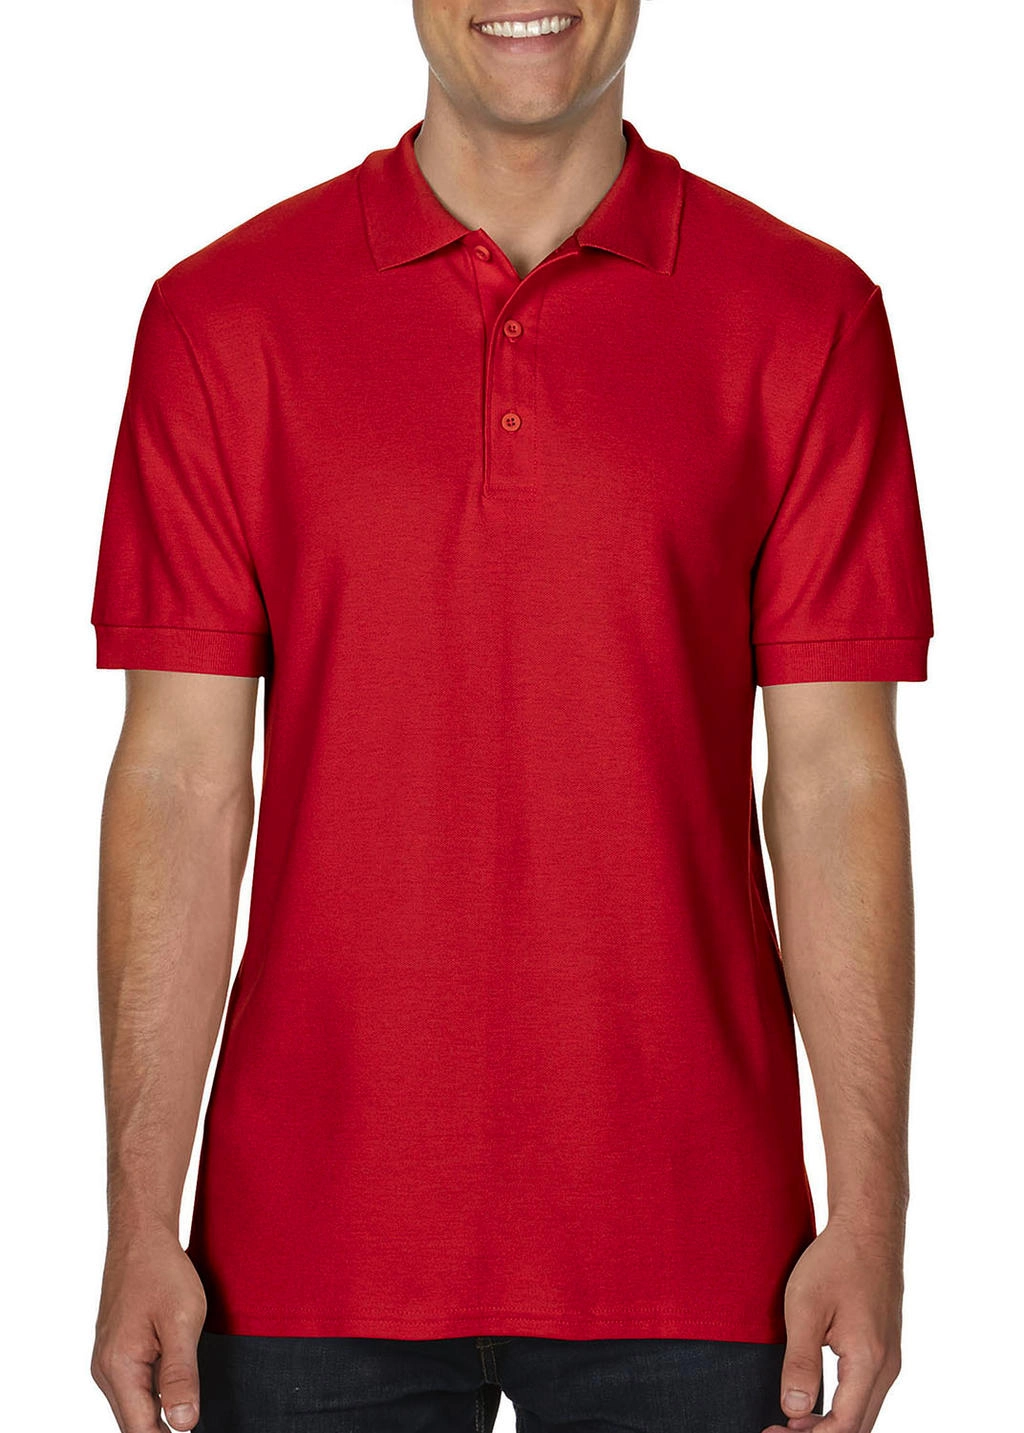 Premium Cotton Double Piqué Polo zum Besticken und Bedrucken in der Farbe Red mit Ihren Logo, Schriftzug oder Motiv.